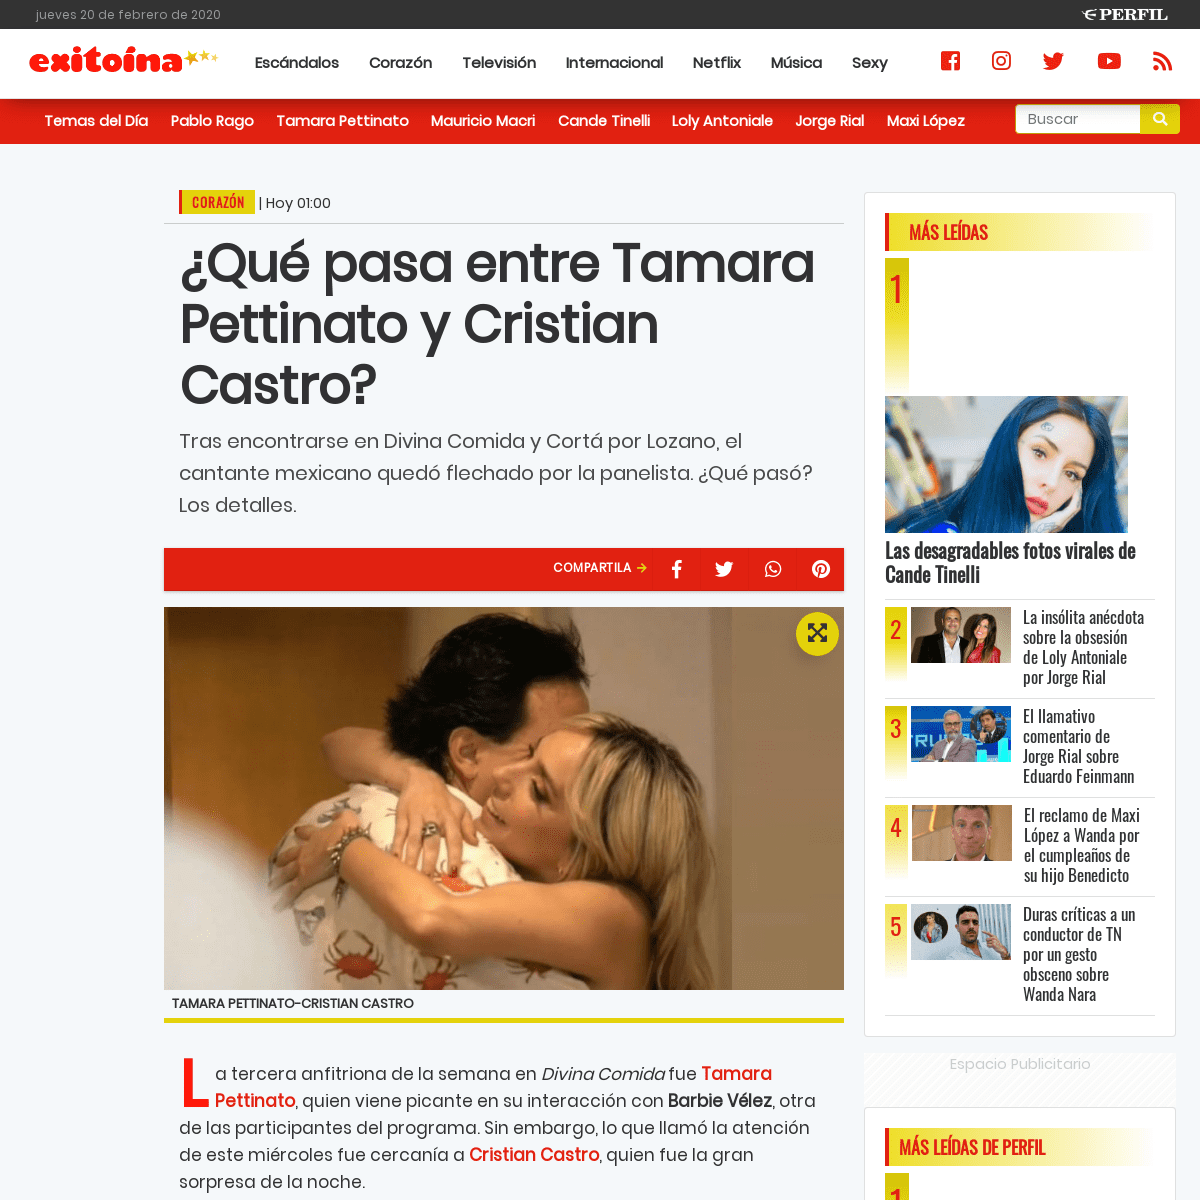 A complete backup of exitoina.perfil.com/noticias/corazon/que-pasa-entre-tamara-pettinato-y-cristian-castro.phtml